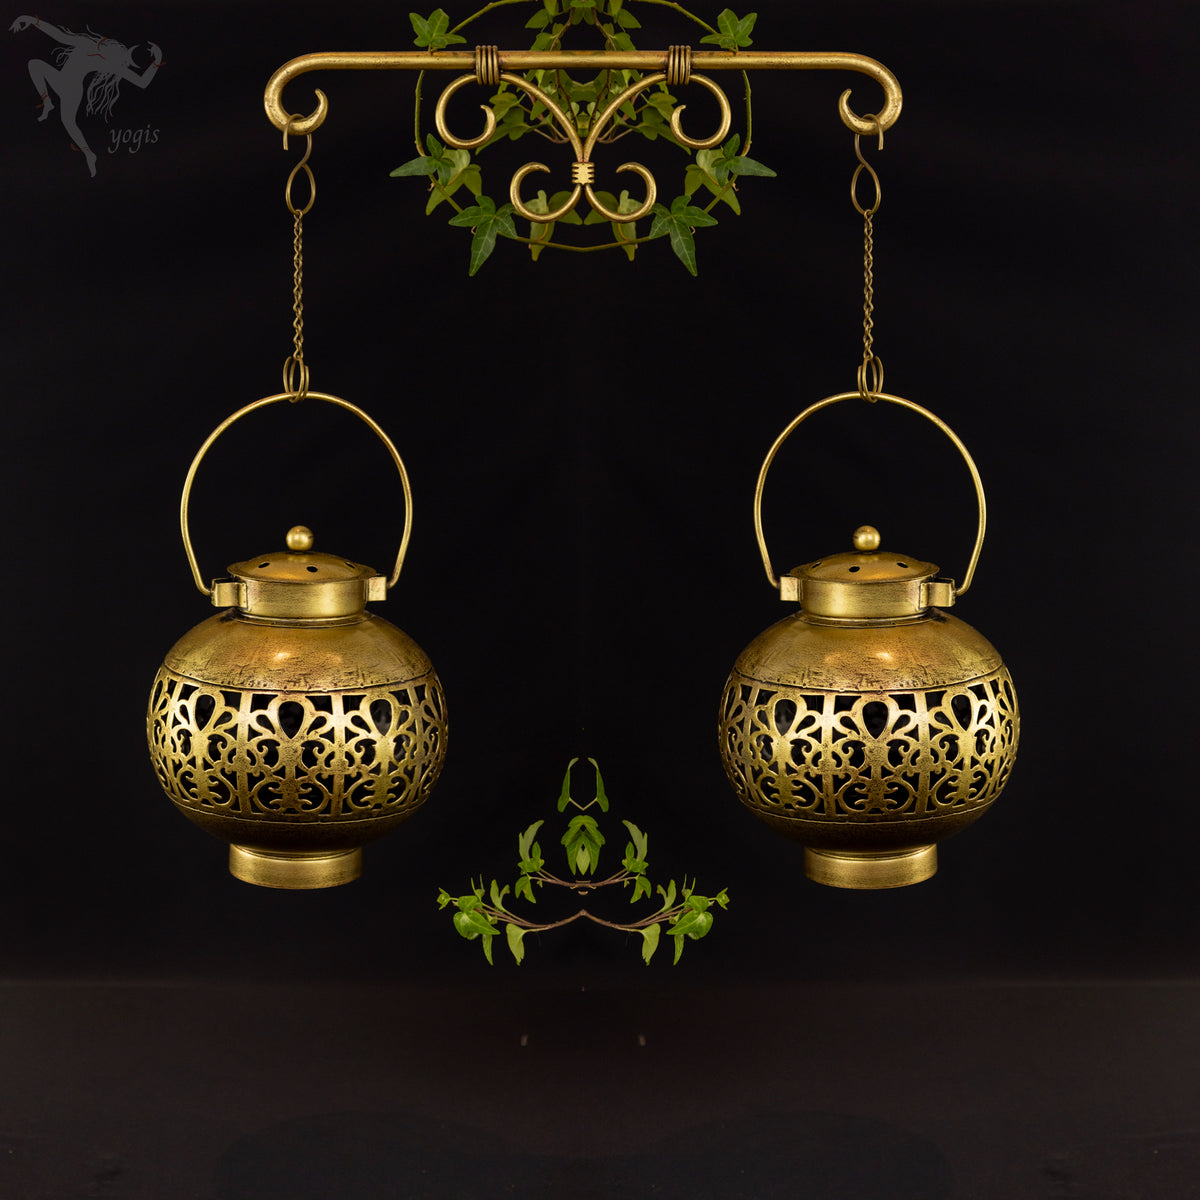 Kalash Dhoop Pot- Handmade Incense and Candle Holder. Unique Design